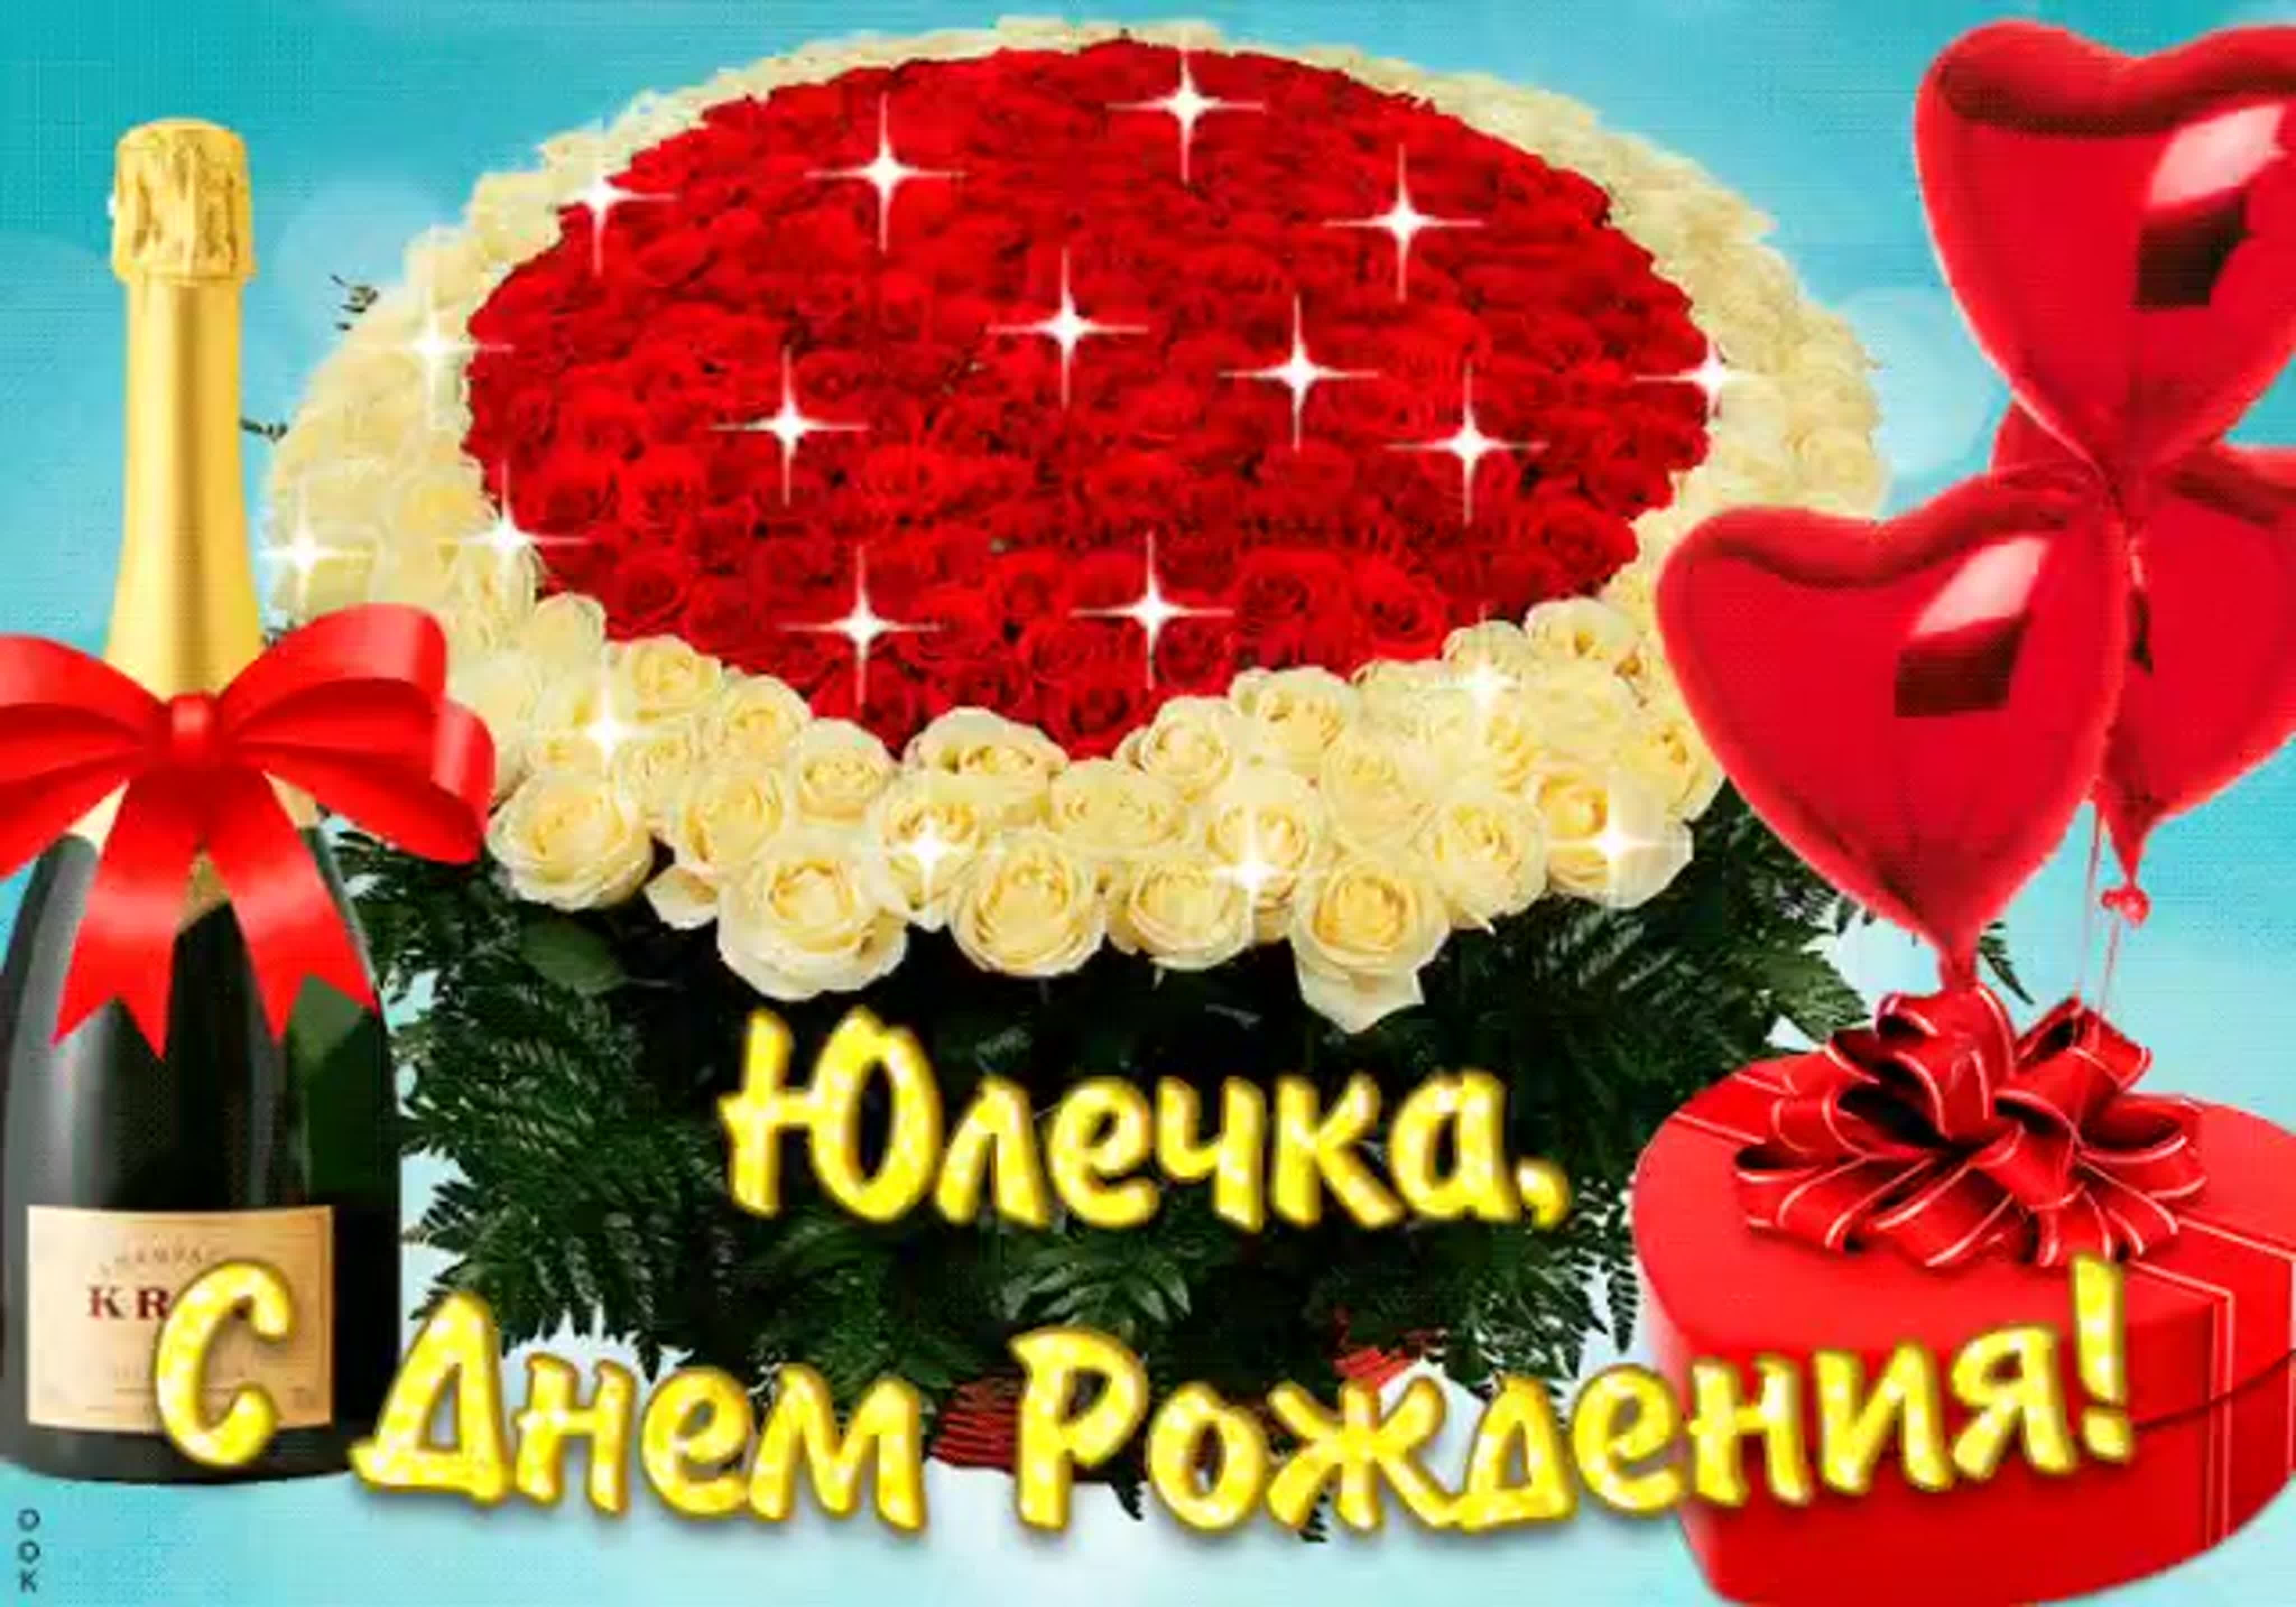 Очень короткое поздравление на украинском языке с днем рождения